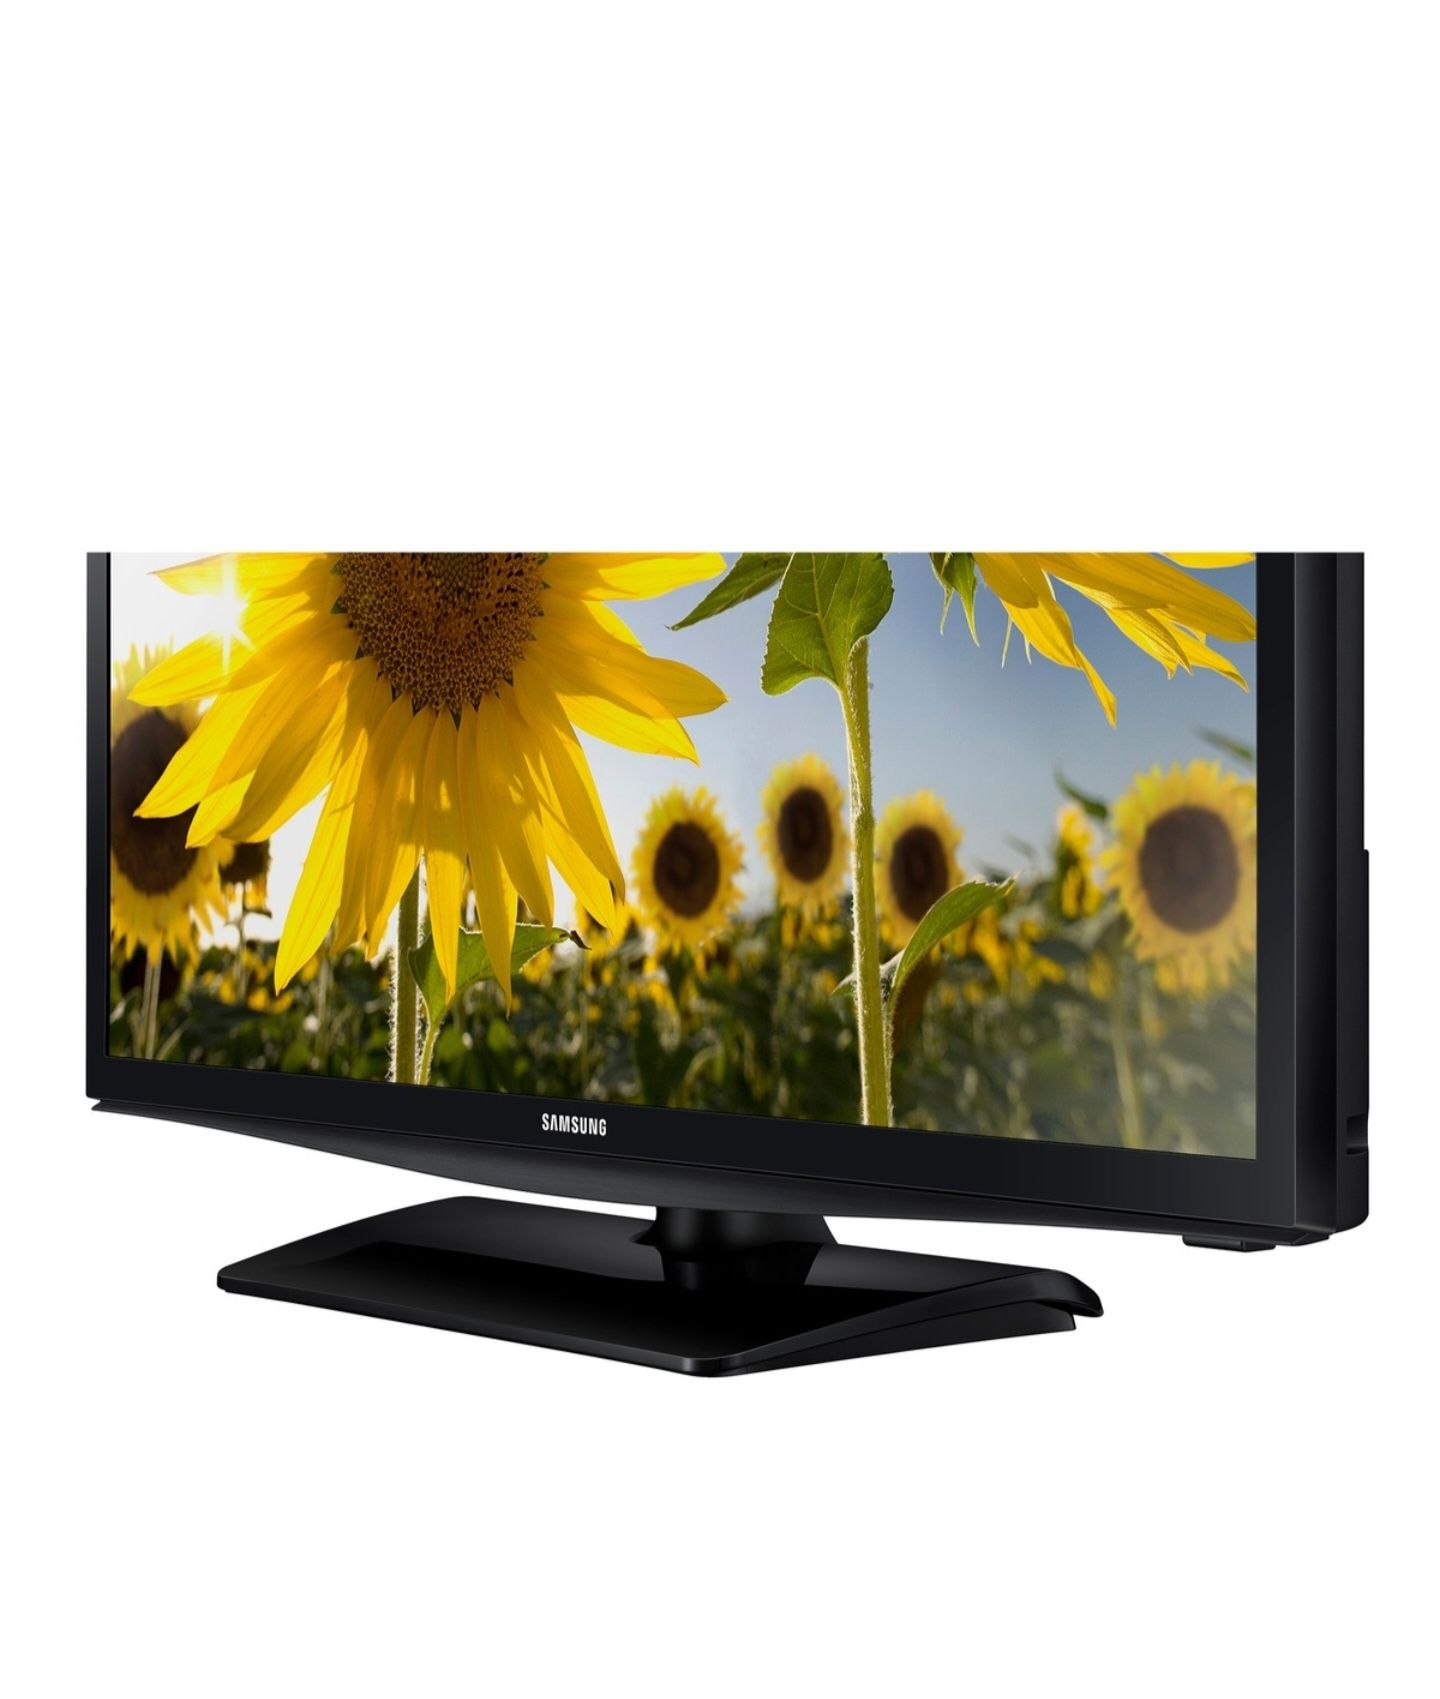 Televizor LED Samsung, 61 cm, 24H4003, HD